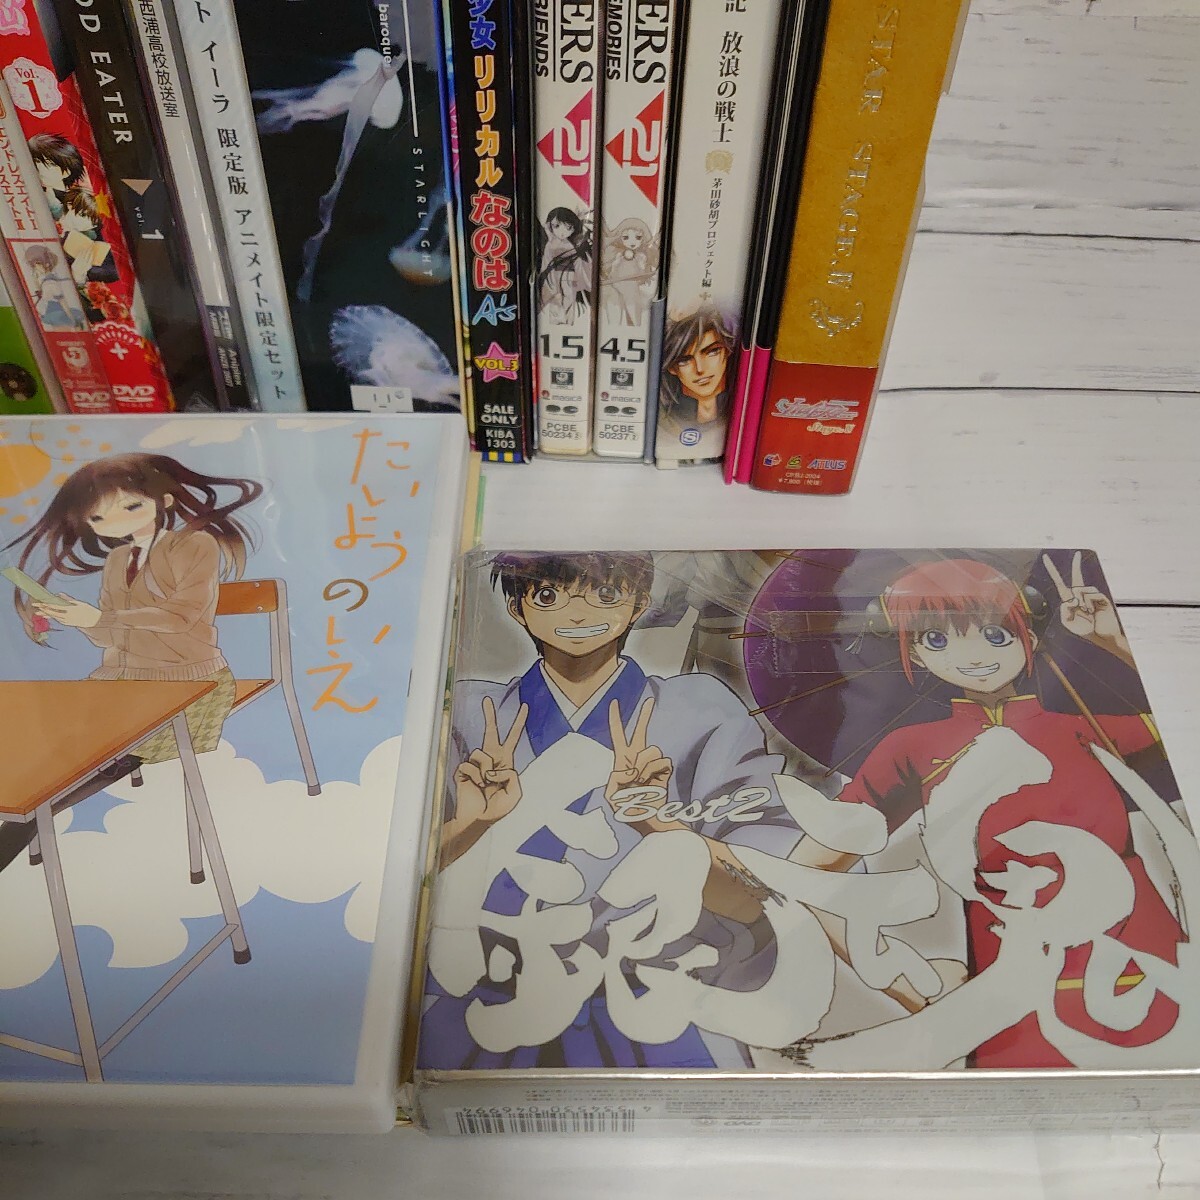 1 иен старт DVD CD аниме много продажа комплектом ... . человек мед . clover Gintama Suzumiya Haruhi no Yuutsu ограничение запись текущее состояние доставка Junk 